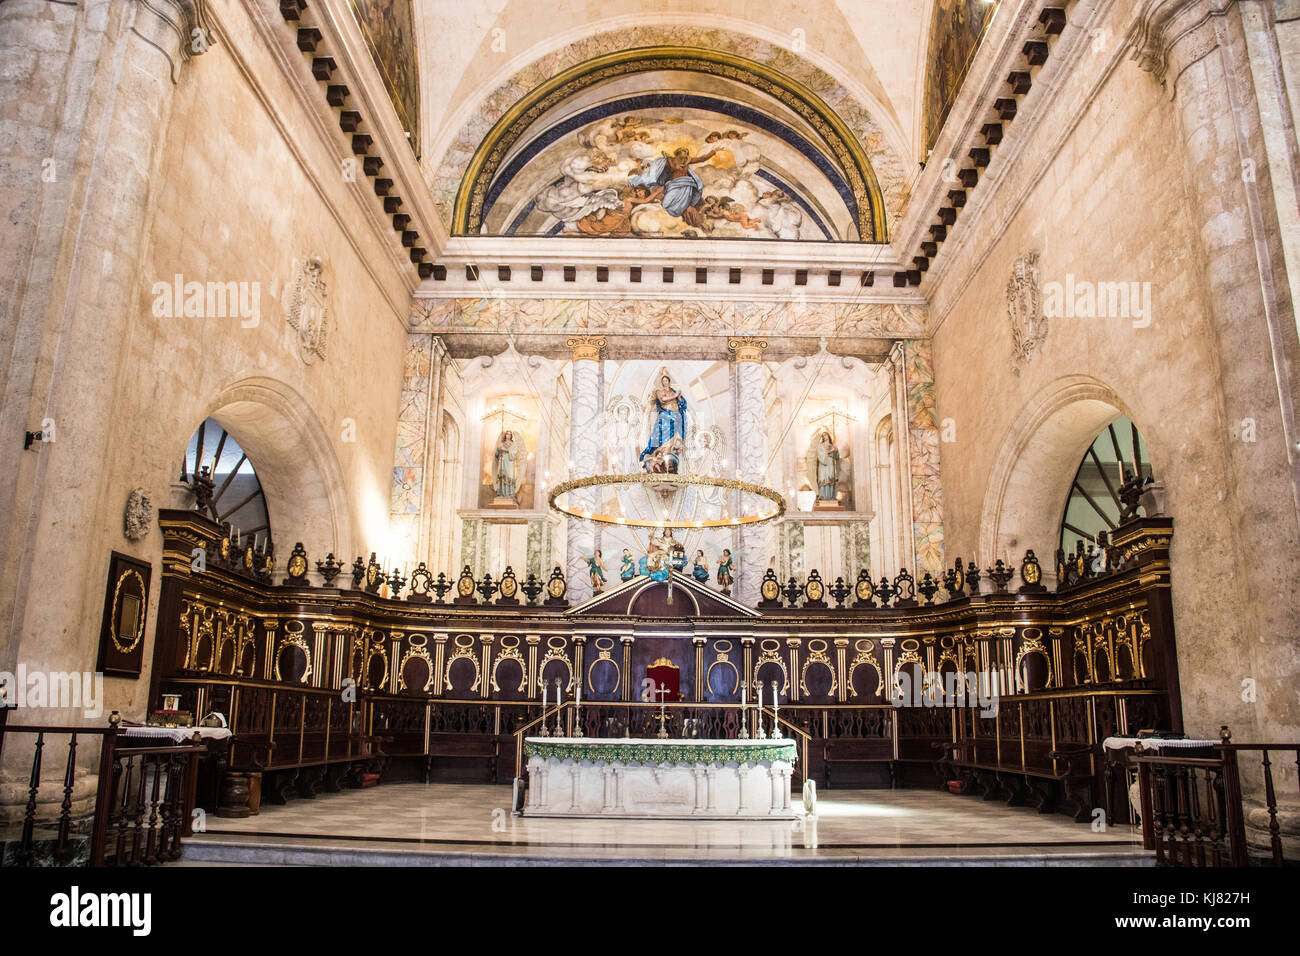 Inside the Havana Cathedral or La Catedral de la Virgen María de la Concepción Inmaculada de La Habana, Havana, Cuba Stock Photo